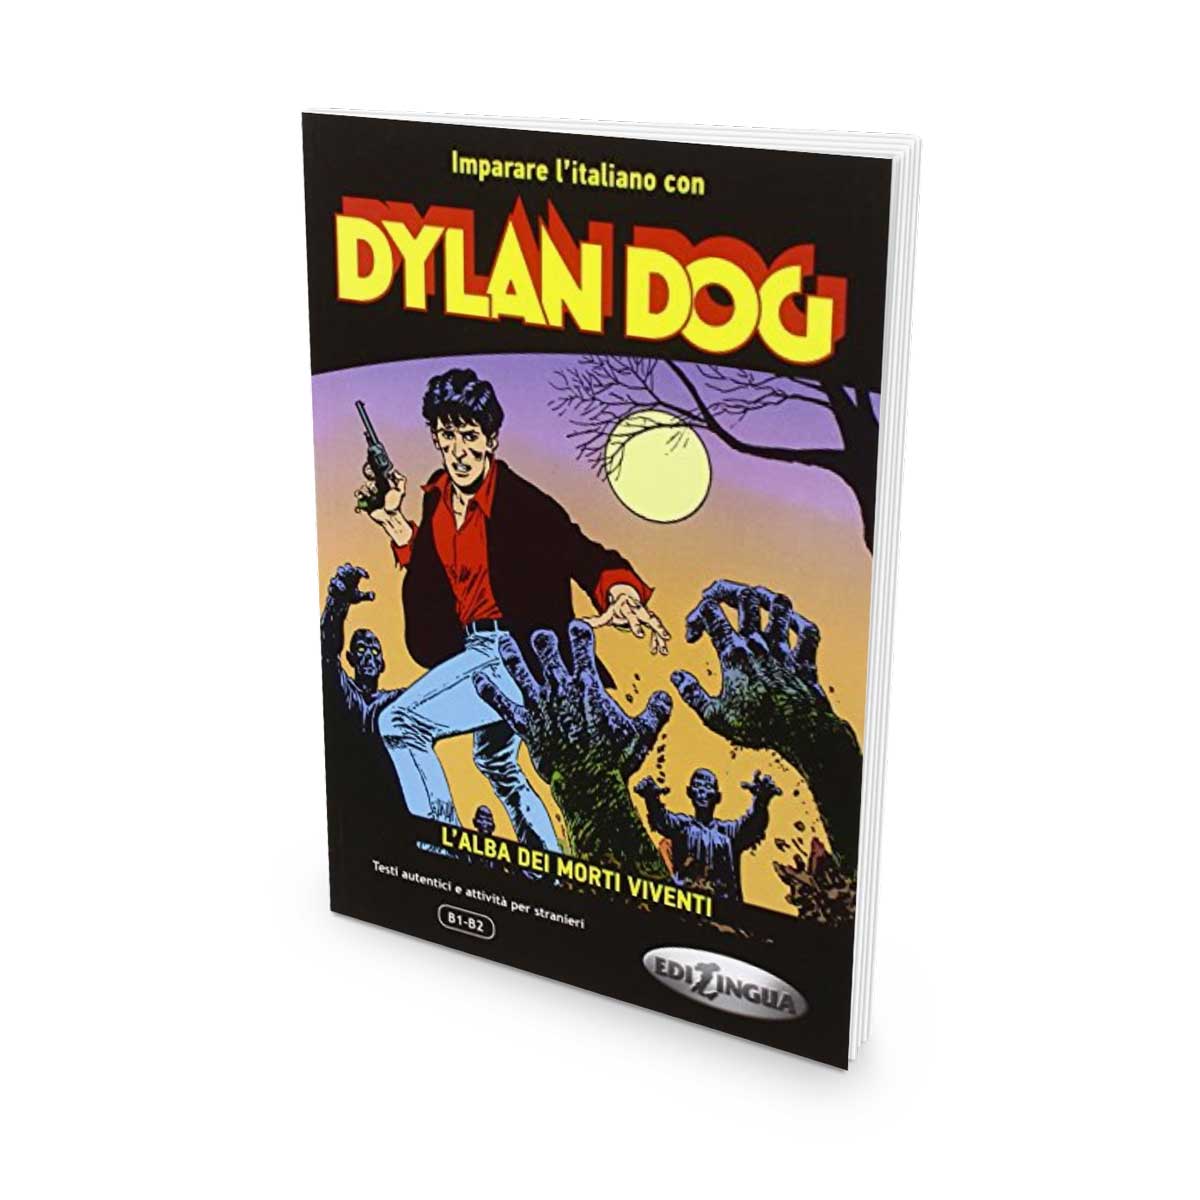 Imparare l'italiano con i fumetti: Dylan Dog – L'alba dei morti viventi